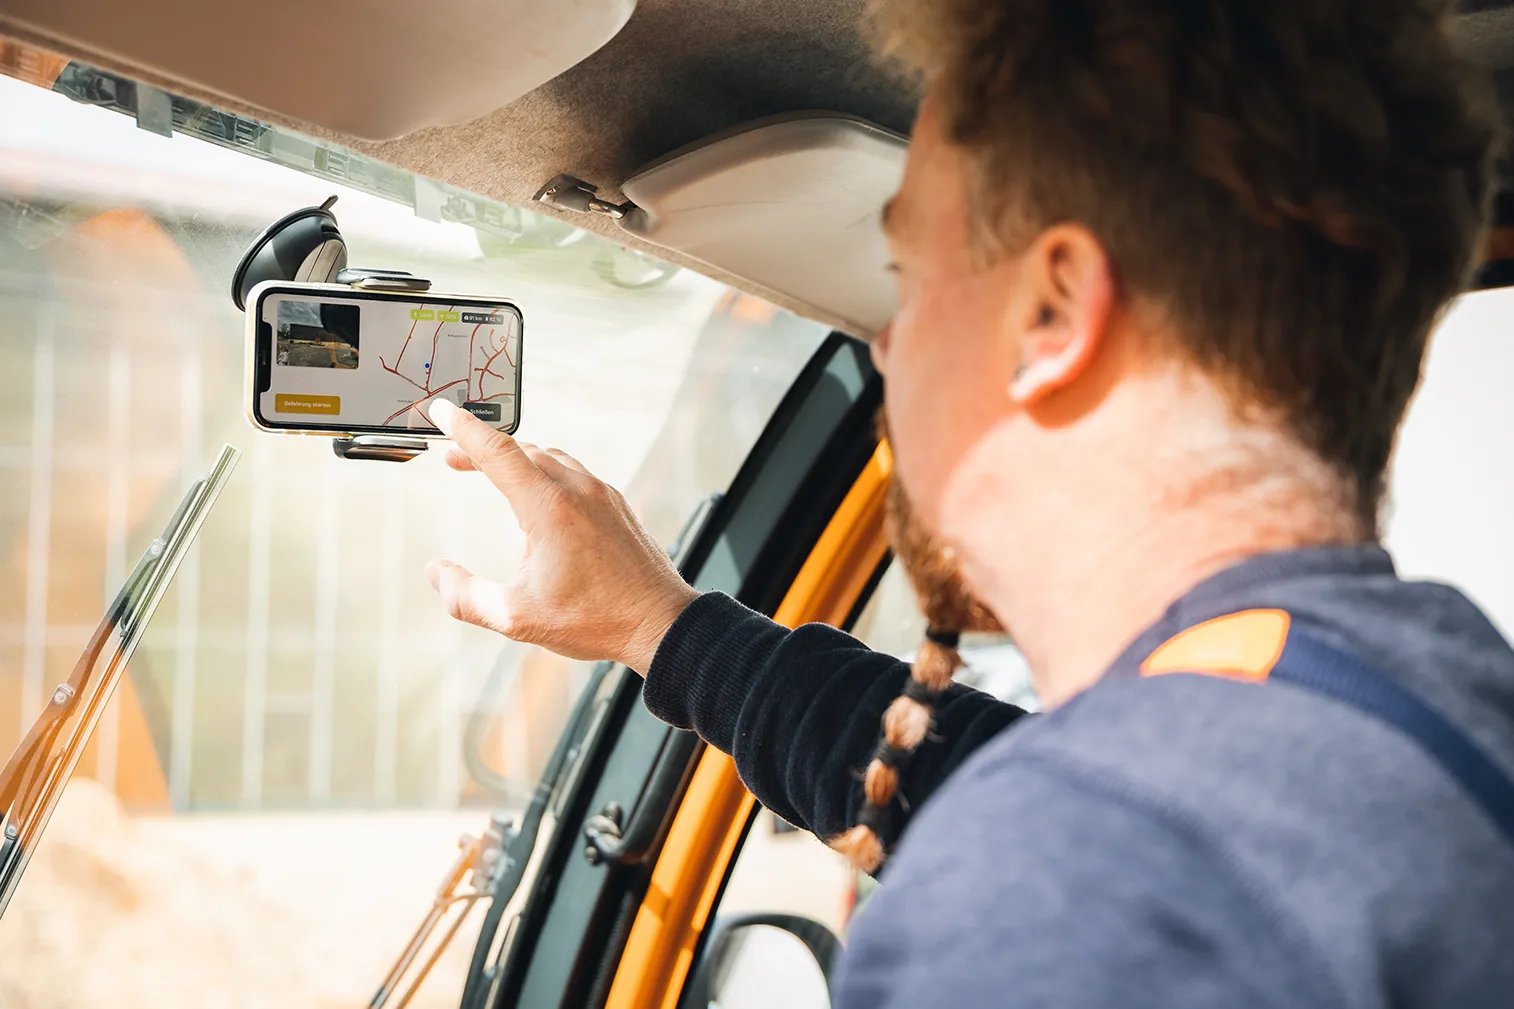 Bauhof Mitarbeiter bedient vialytics Phone der Windschutzscheibe des Fahrzeugs